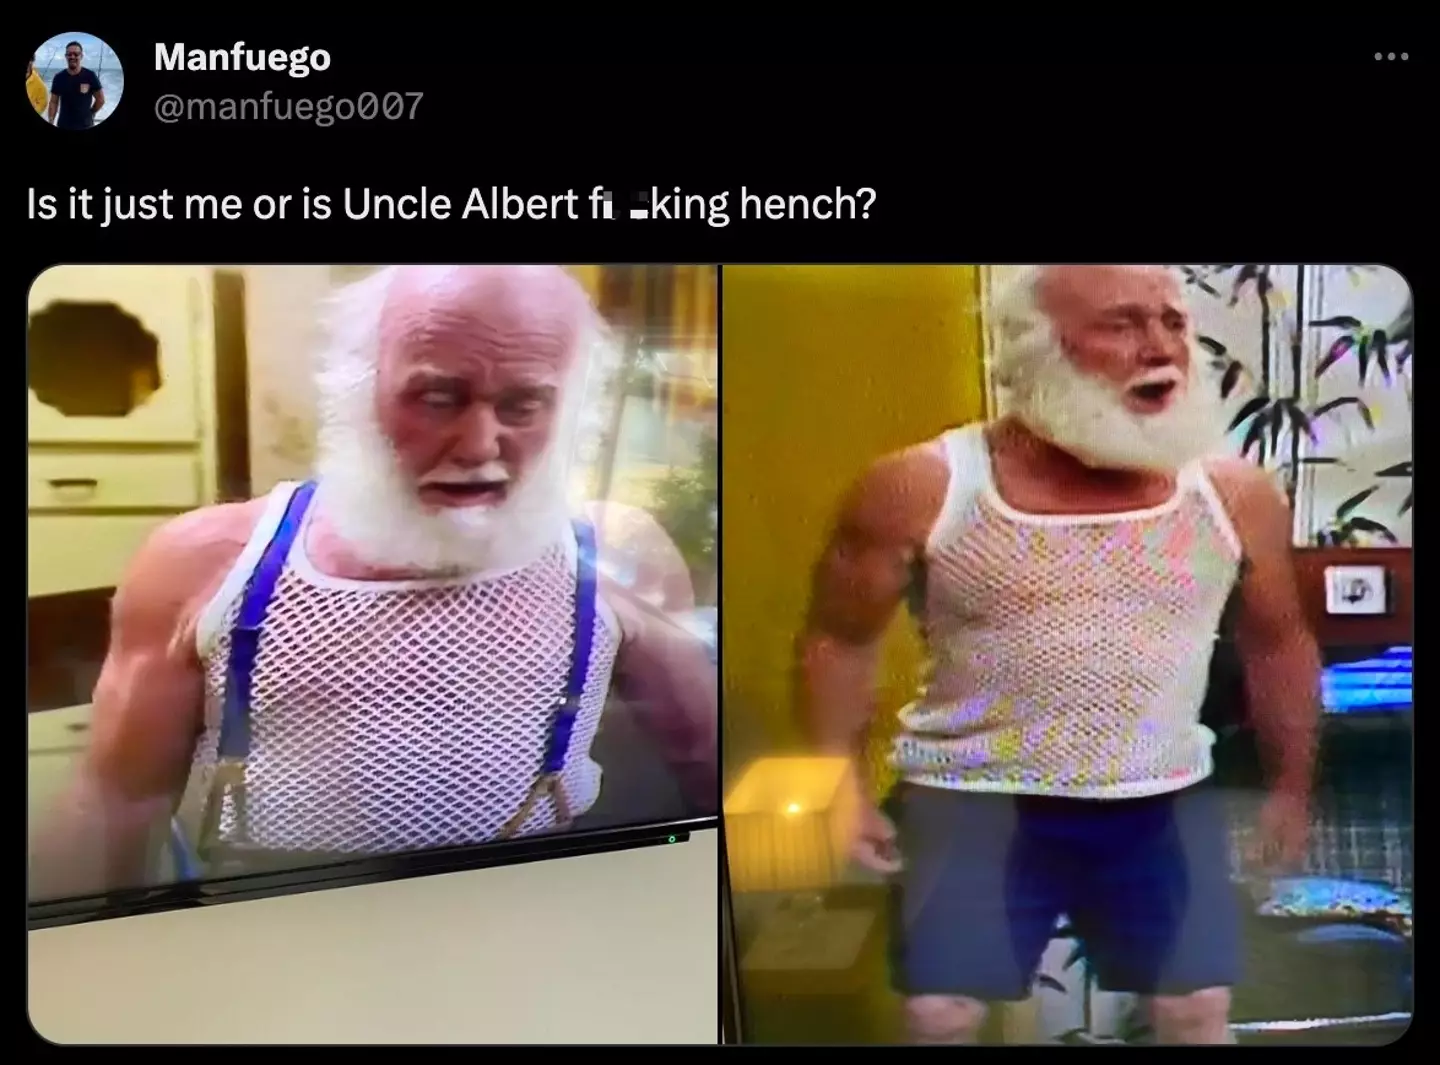 Uncle Albert was swole.